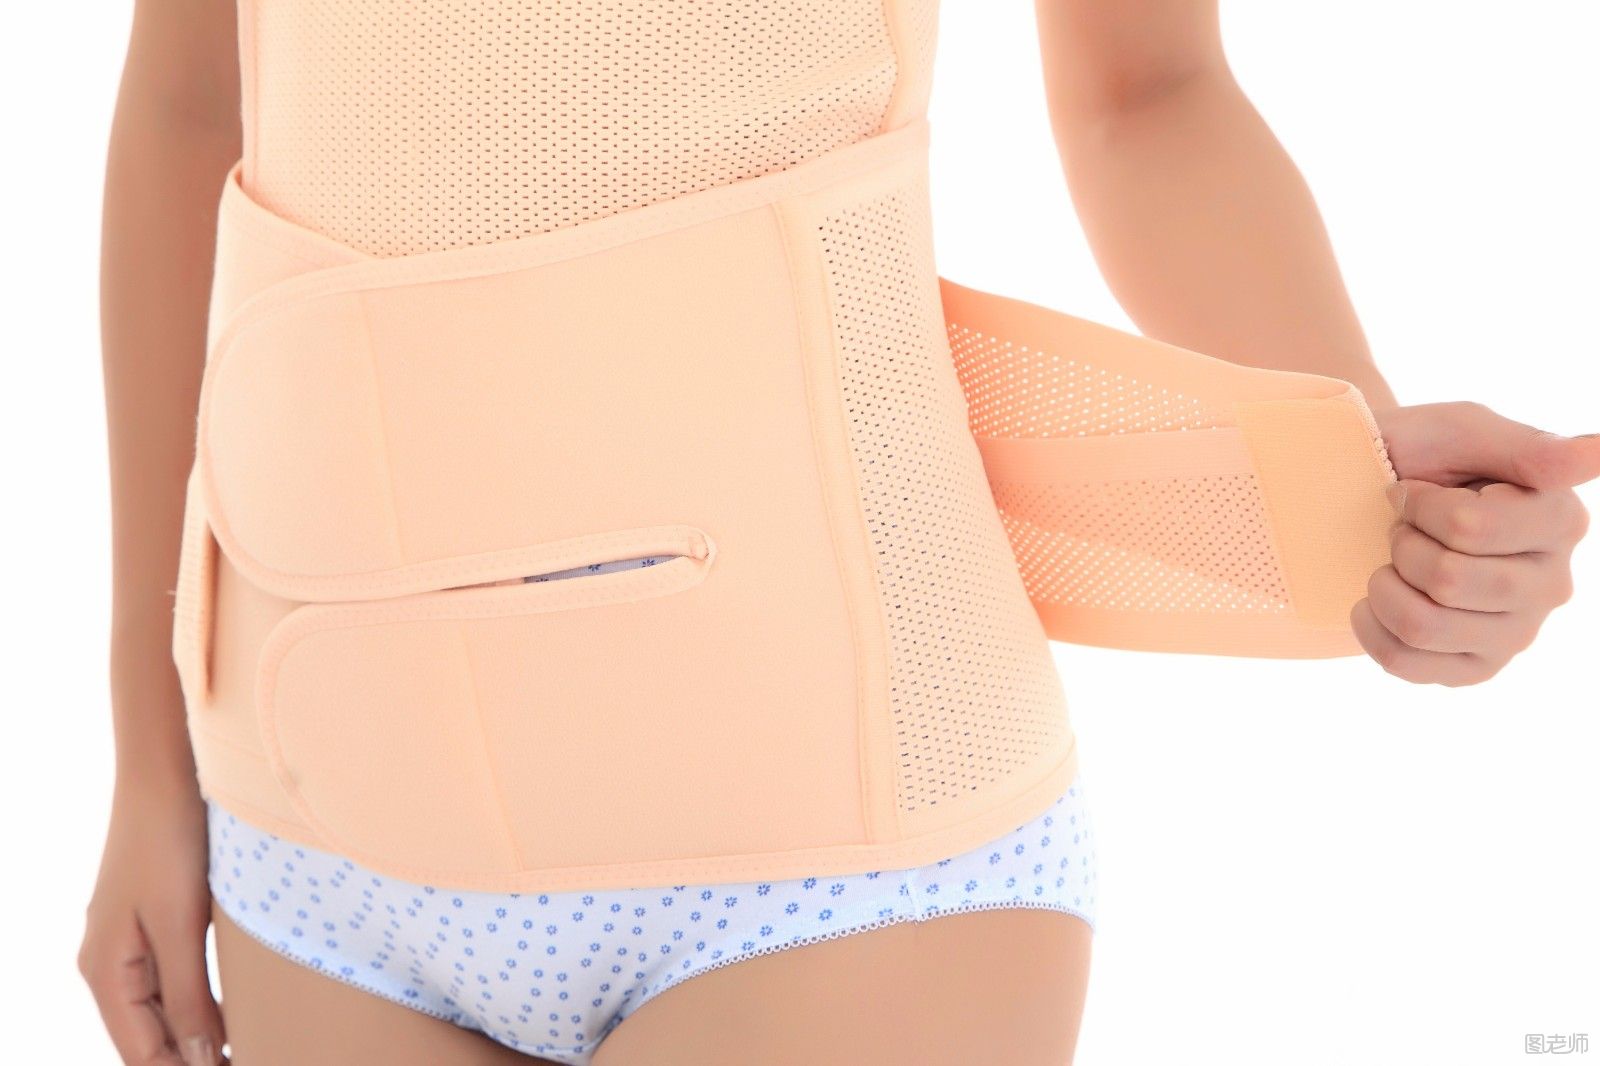 产妇使用束腰带需要注意什么 产后使用束缚带的注意事项